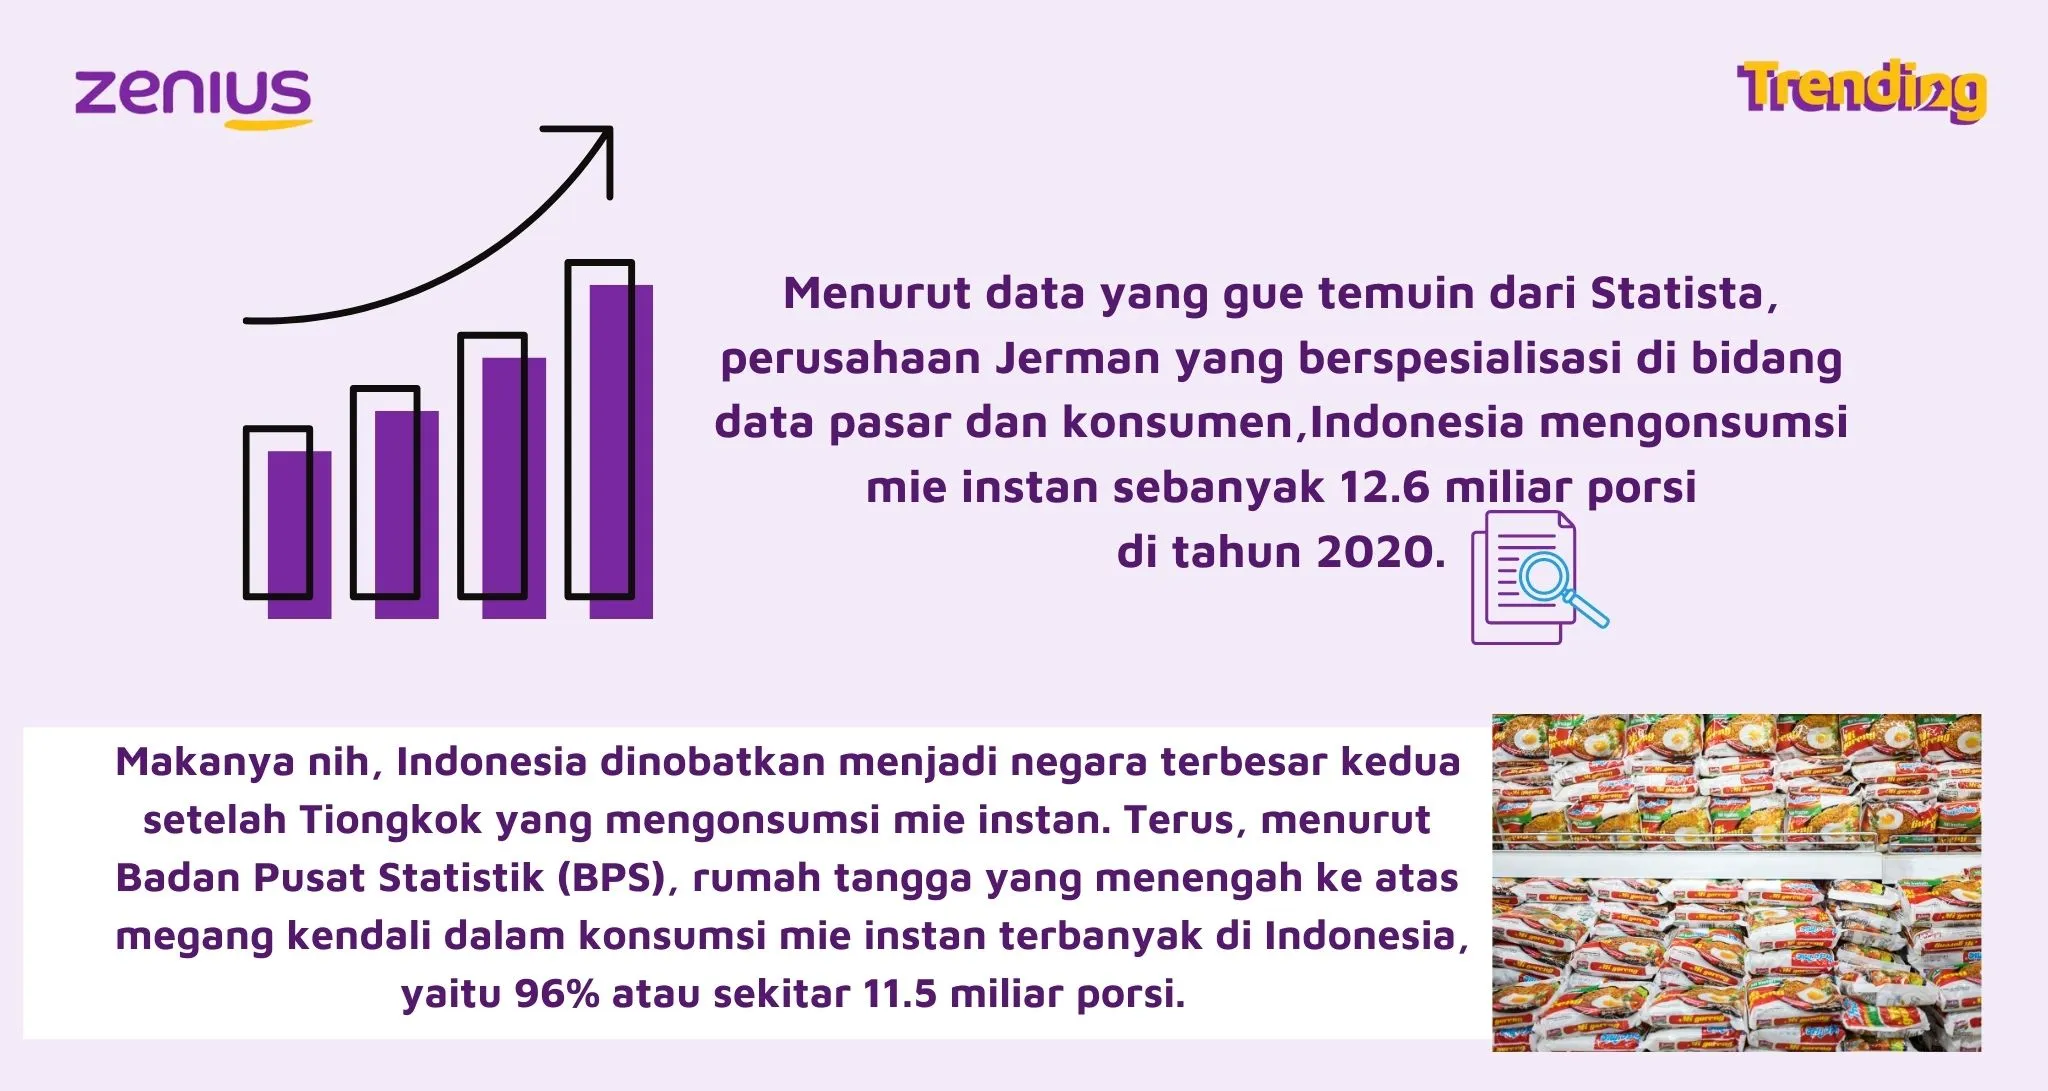 Data pemakan mie instan di Indonesia (Arsip Zenius)
